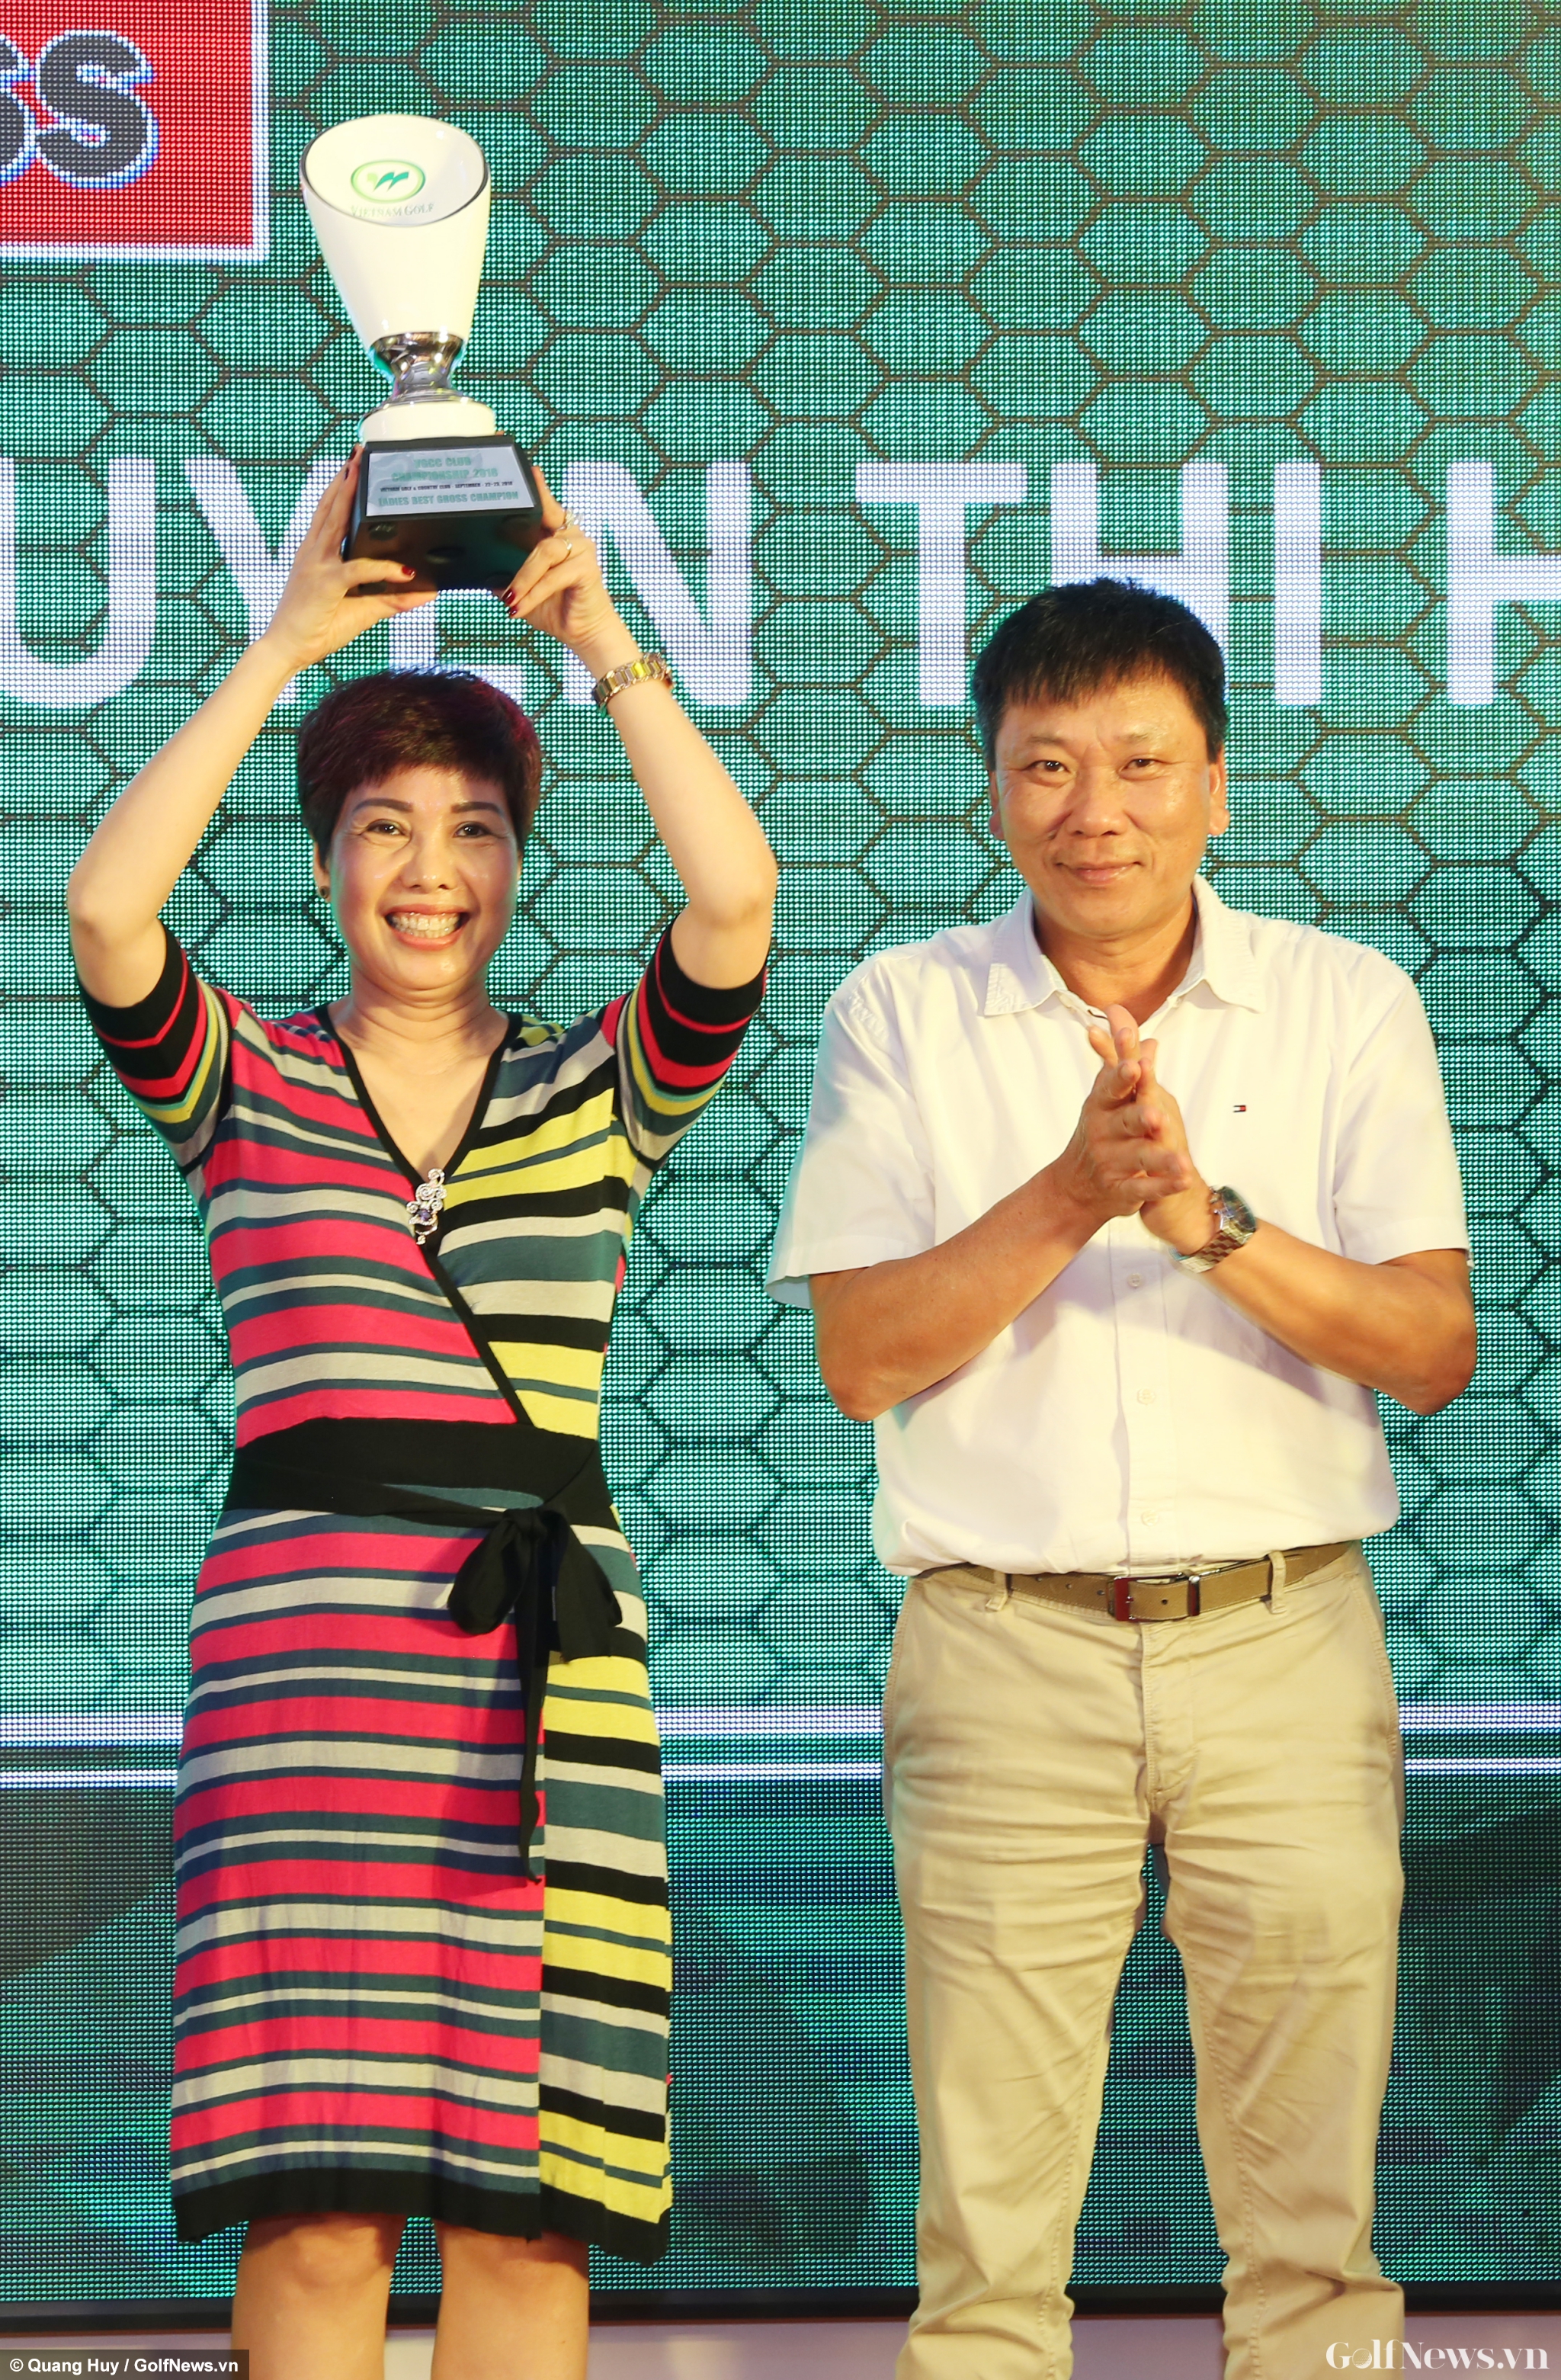 Tổng kết giải Vô địch CLB năm 2018 tại Vietnam Golf & Country Club